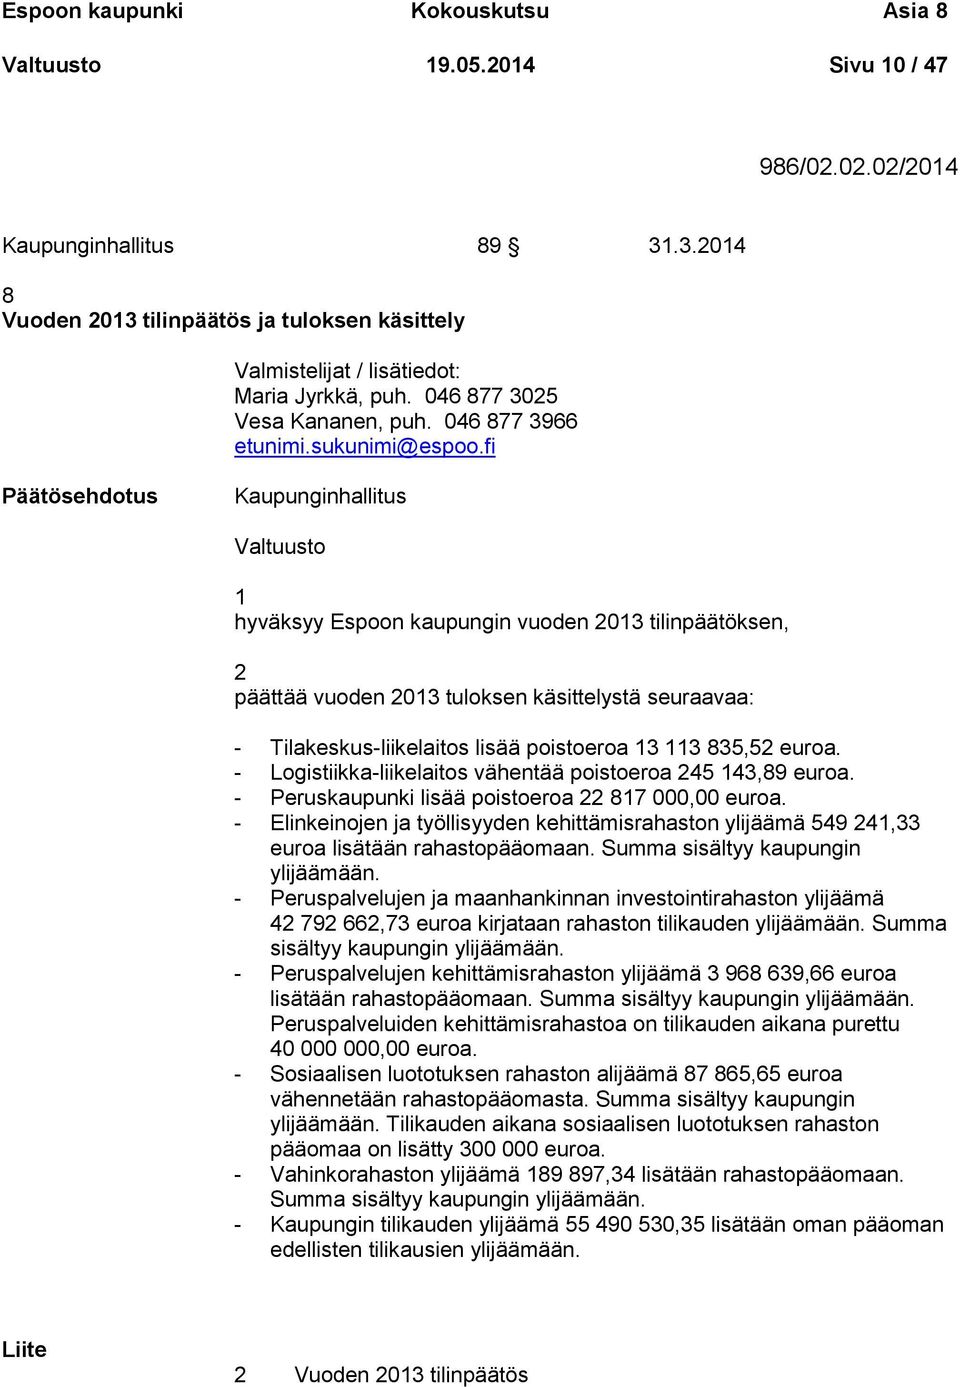 fi Kaupunginhallitus Valtuusto 1 hyväksyy Espoon kaupungin vuoden 2013 tilinpäätöksen, 2 päättää vuoden 2013 tuloksen käsittelystä seuraavaa: - Tilakeskus-liikelaitos lisää poistoeroa 13 113 835,52